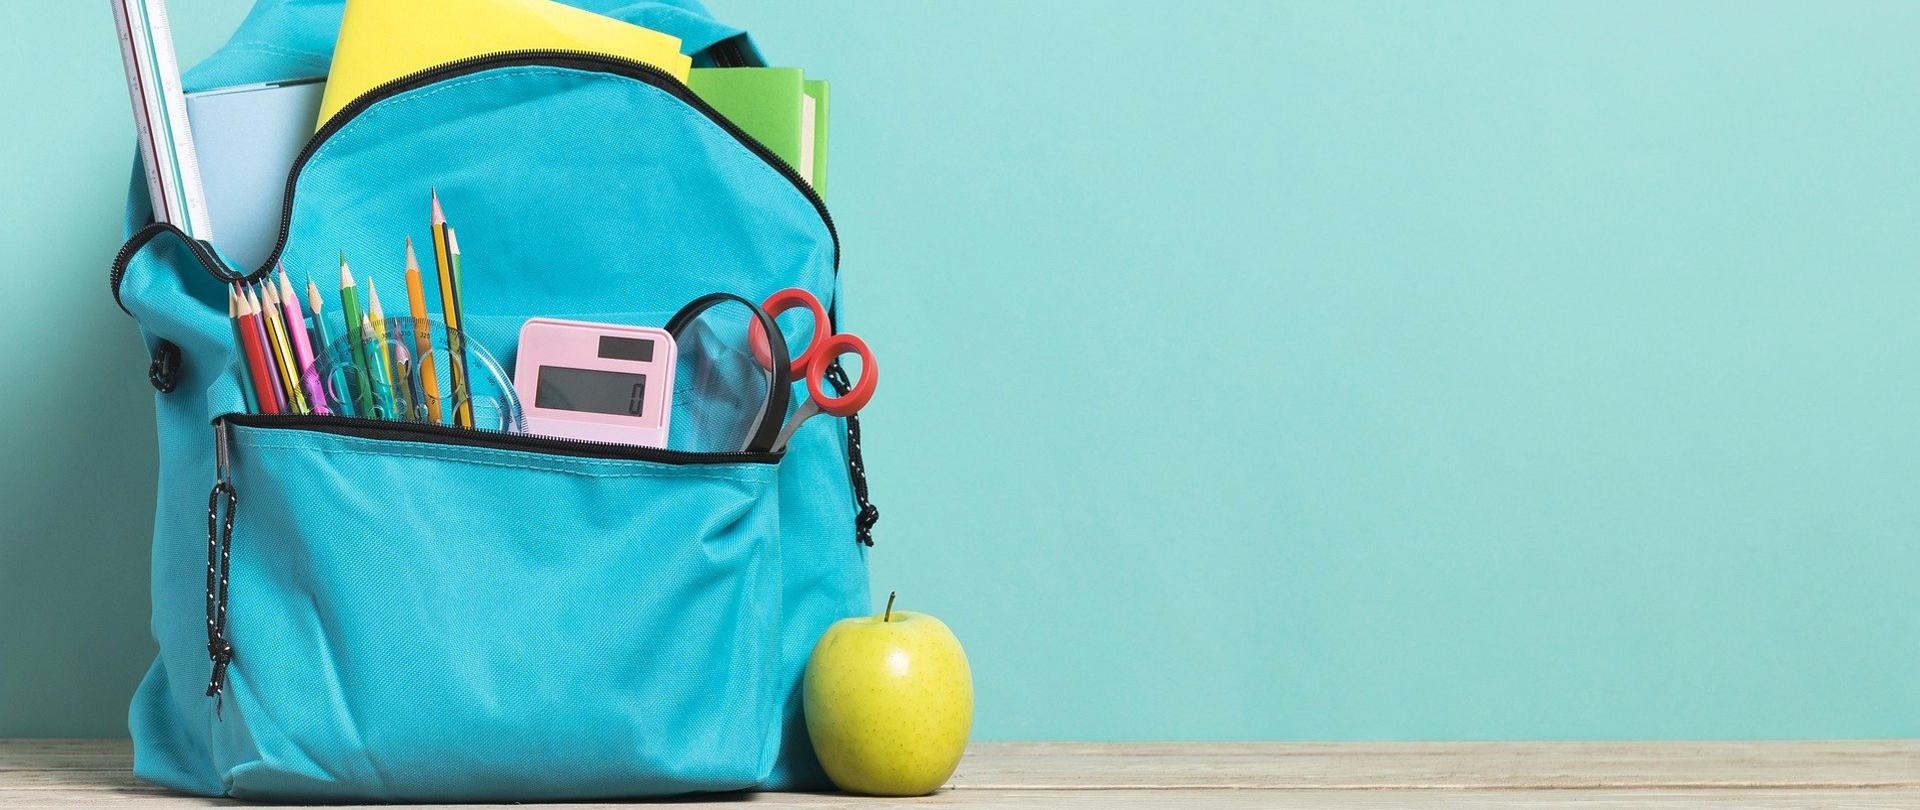 plecak szkolny stojący na podłodze pod ścianą, z którego wystają zeszyty, linijki, kredki. Przy plecaku leży zielone jabłko.